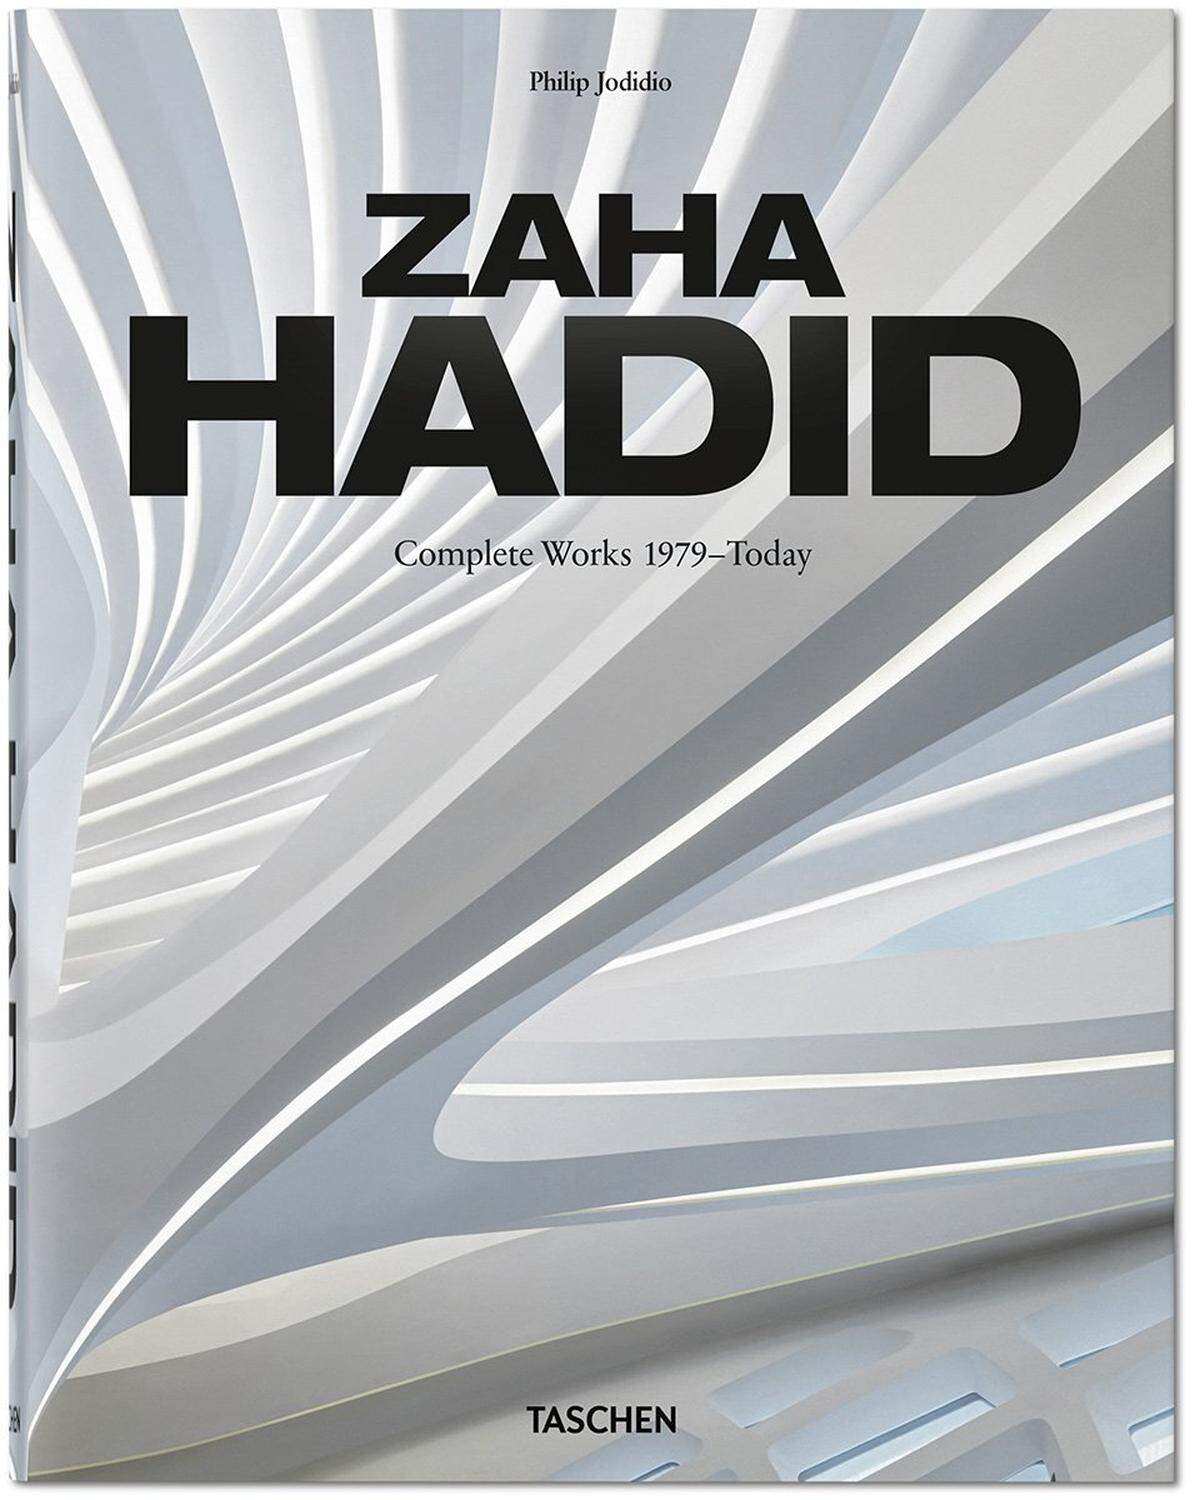 Dies waren nur einige Beispiele dafür, wie Zaha Hadid auch noch nach ihrem Tod der Welt ihren Stempel aufdrückt. Weitere Bauten gibt es hier zu sehen oder ab Ende März im neuen Werk aus dem Taschen-Verlag. Zaha Hadid. Complete Works 1979–Today. 2020 Edition, Philip Jodidio, Hardcover, 672 Seiten, € 50.